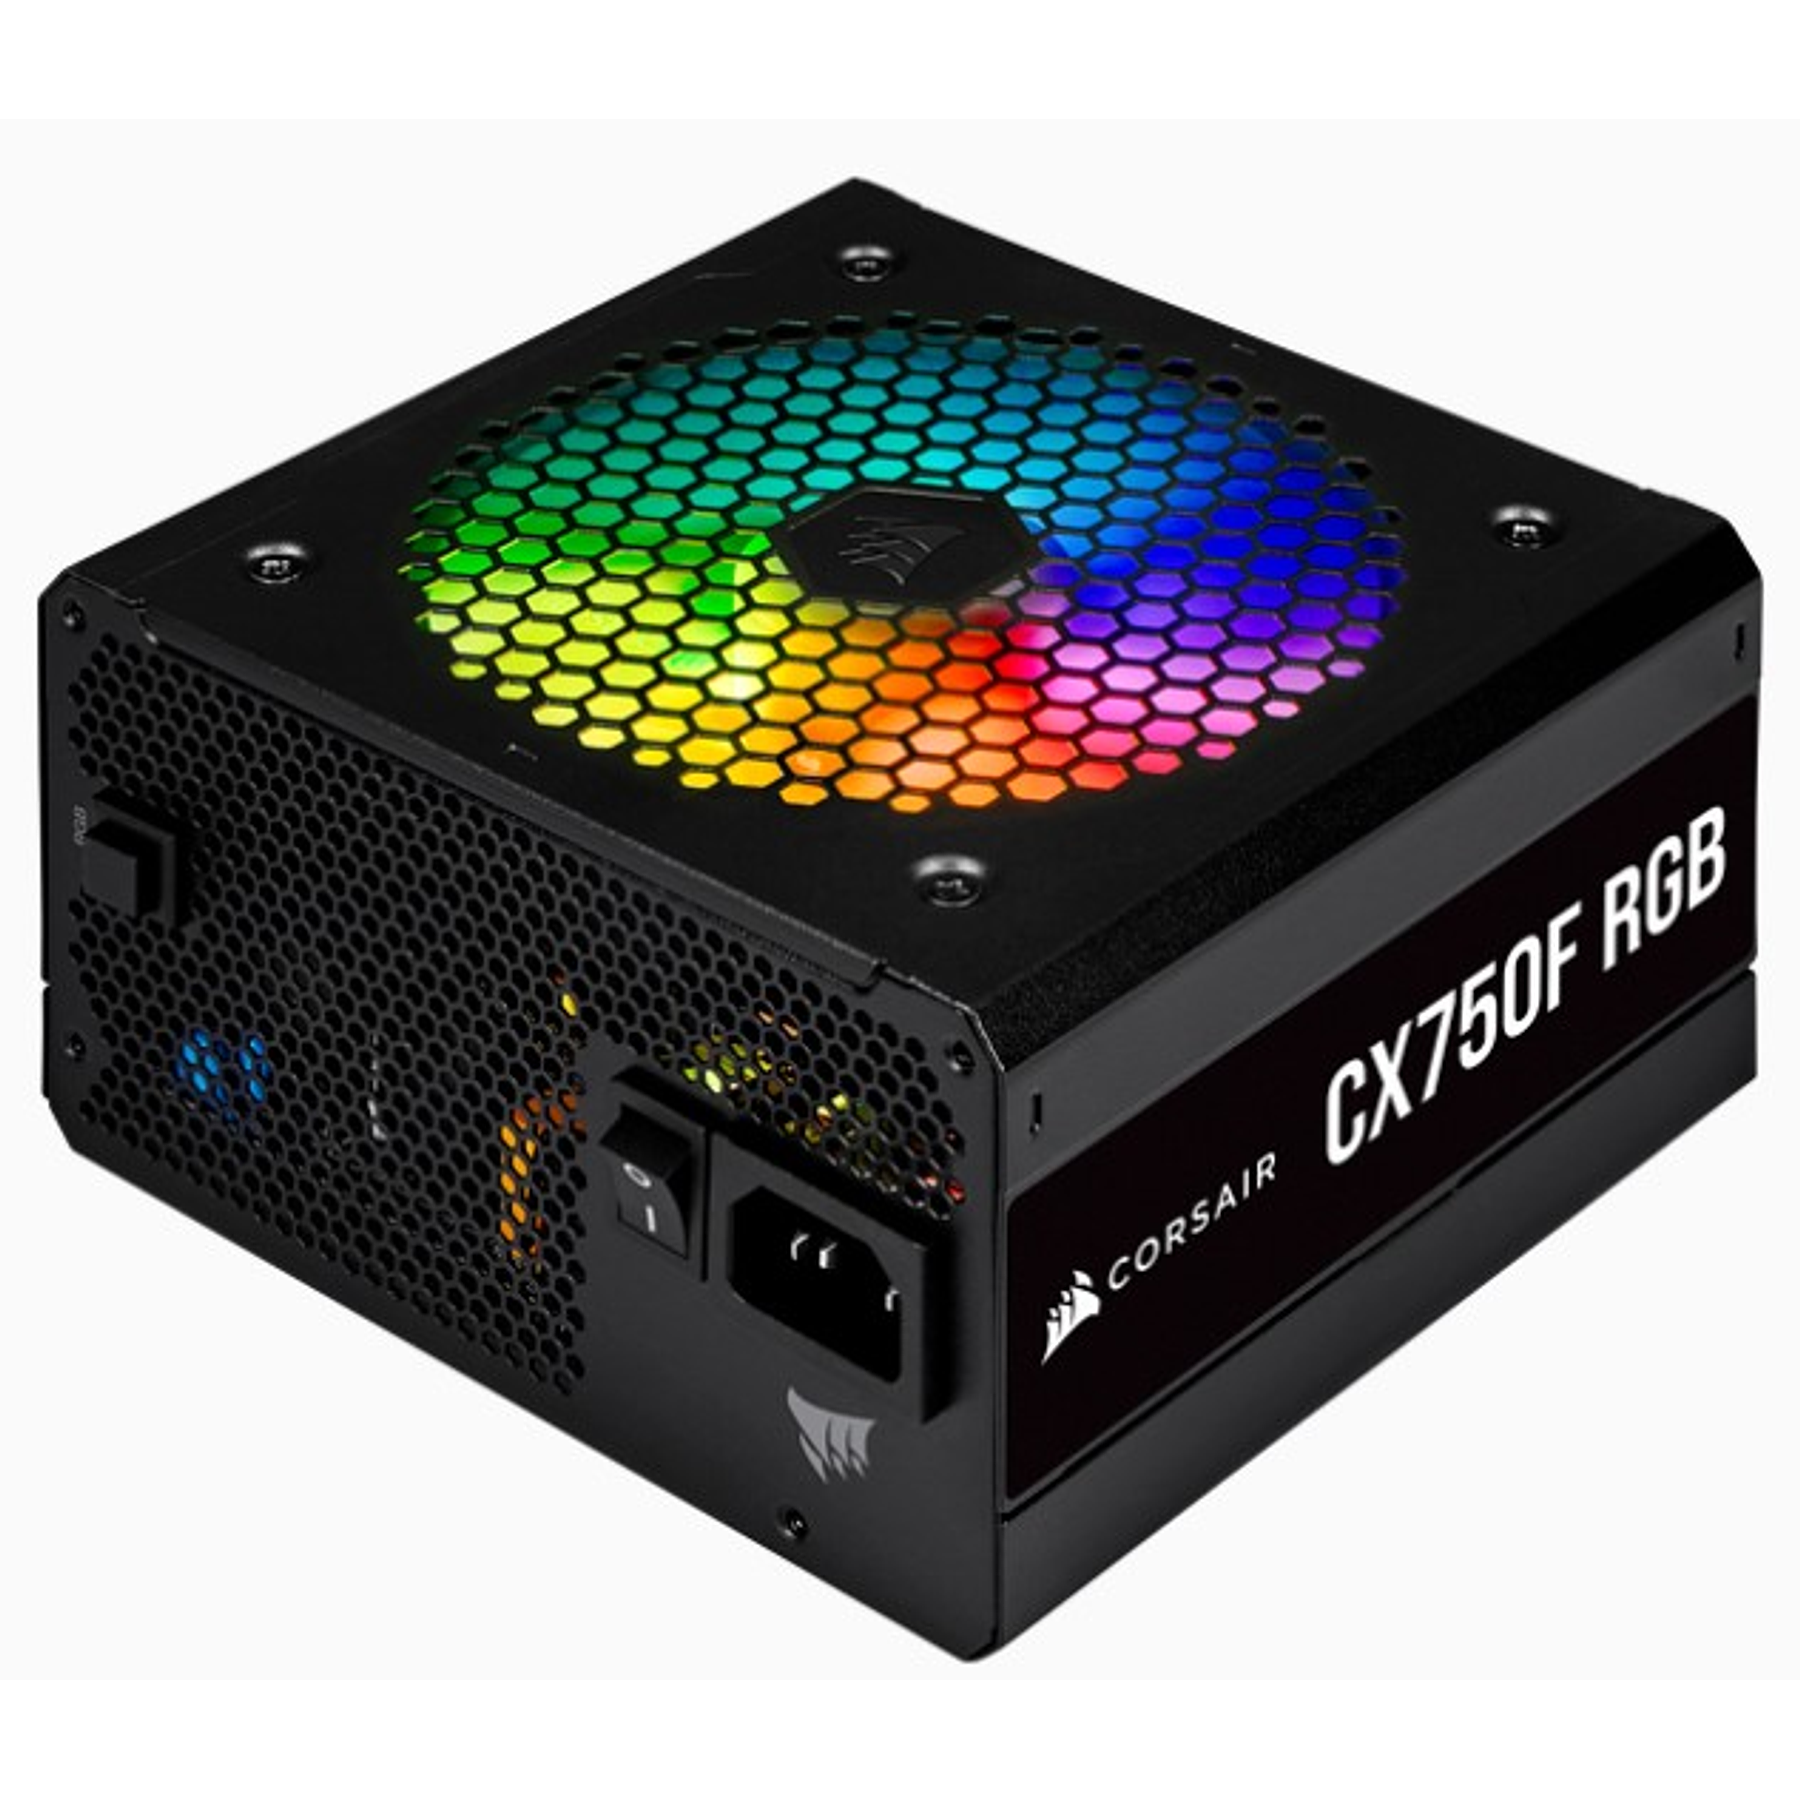 Corsair Fuente de alimentación CX750F RGB Full Modular 80...